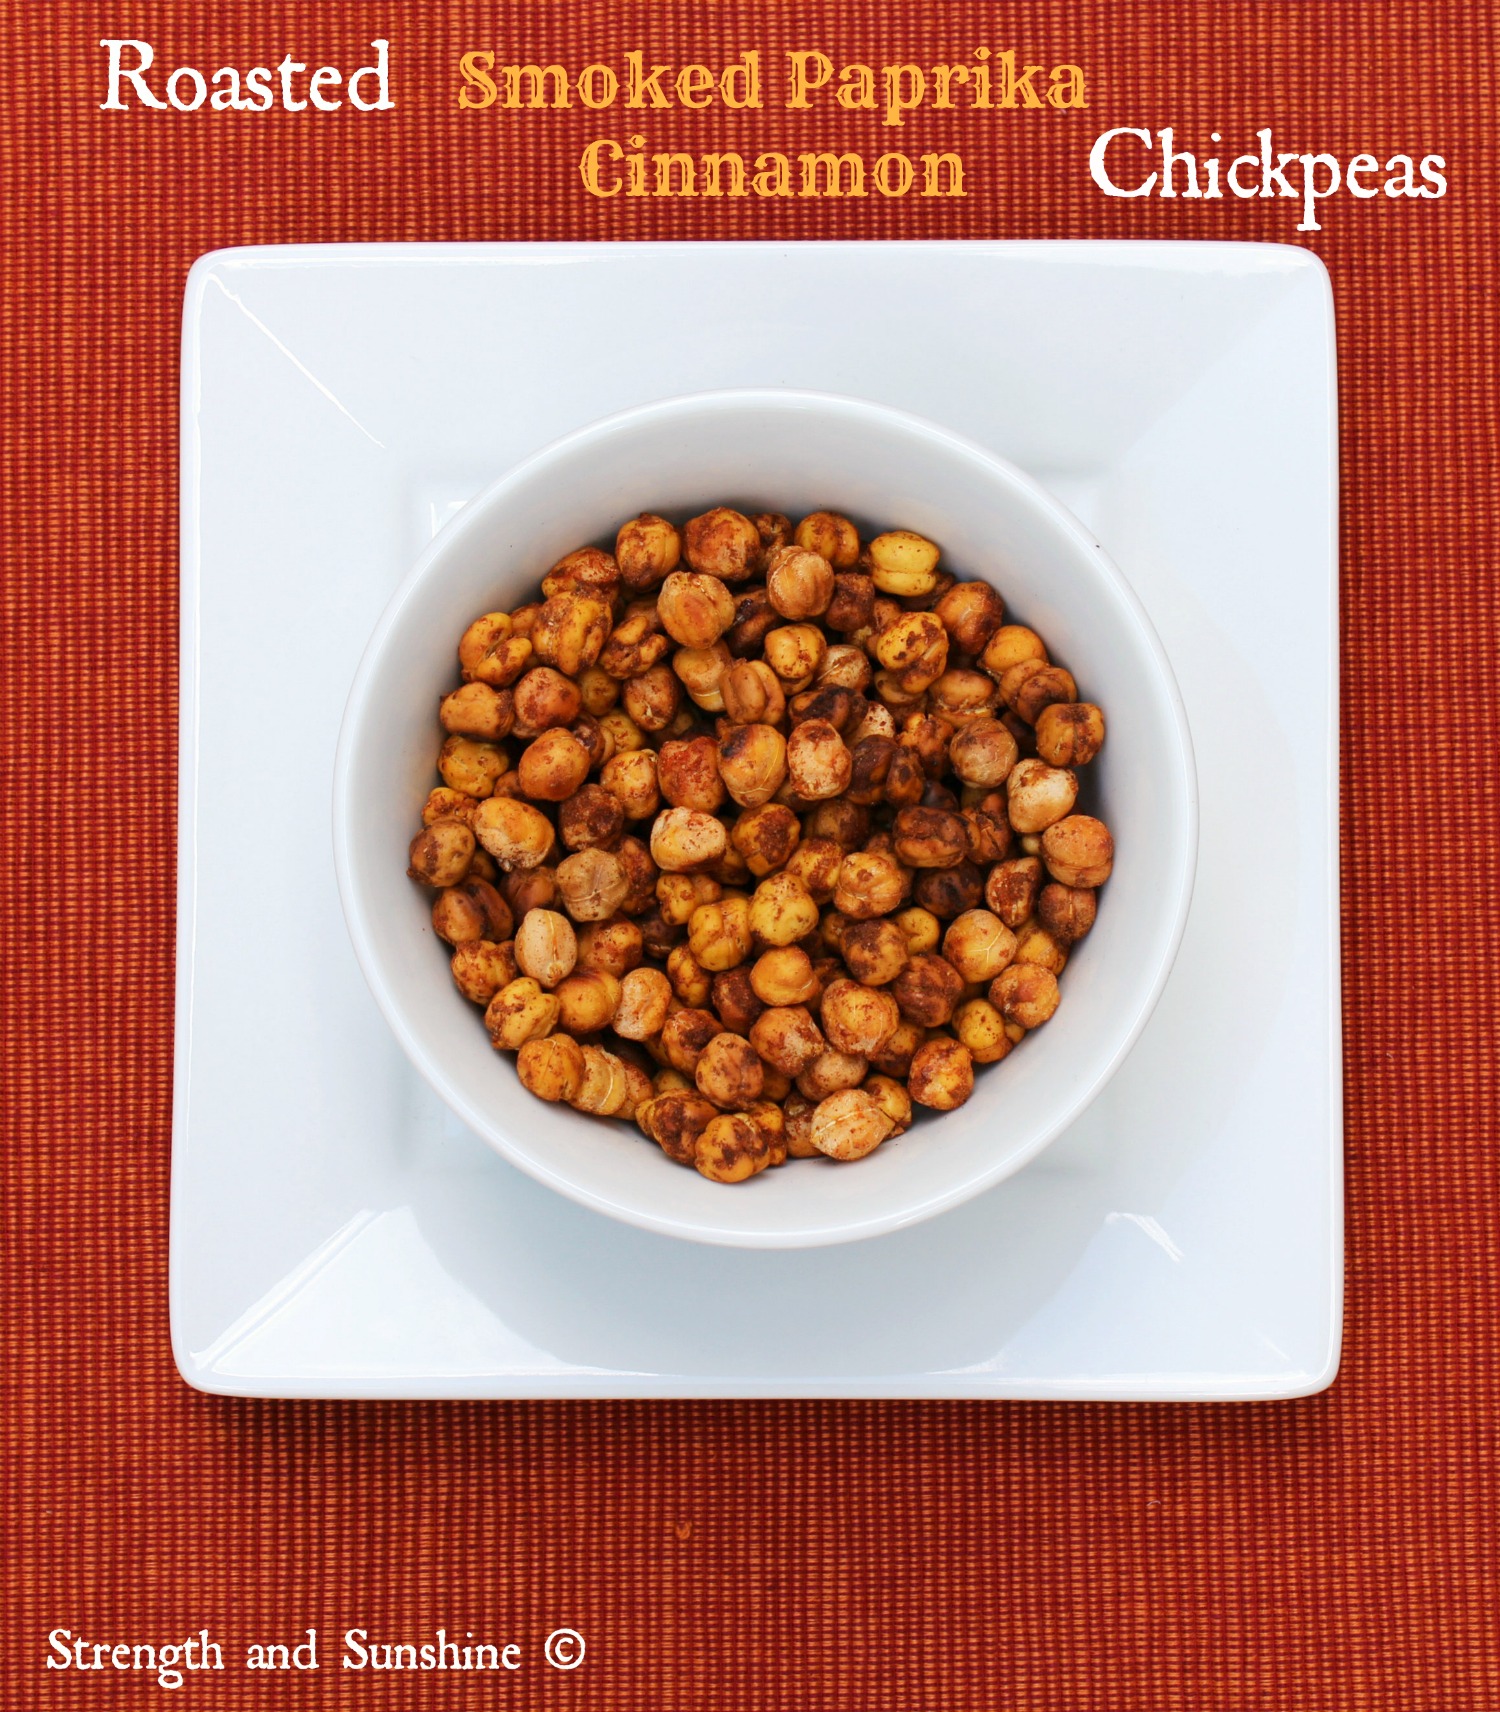 Roasted-Smoked-Paprika-Cinnamon-Chickpeas-1.1